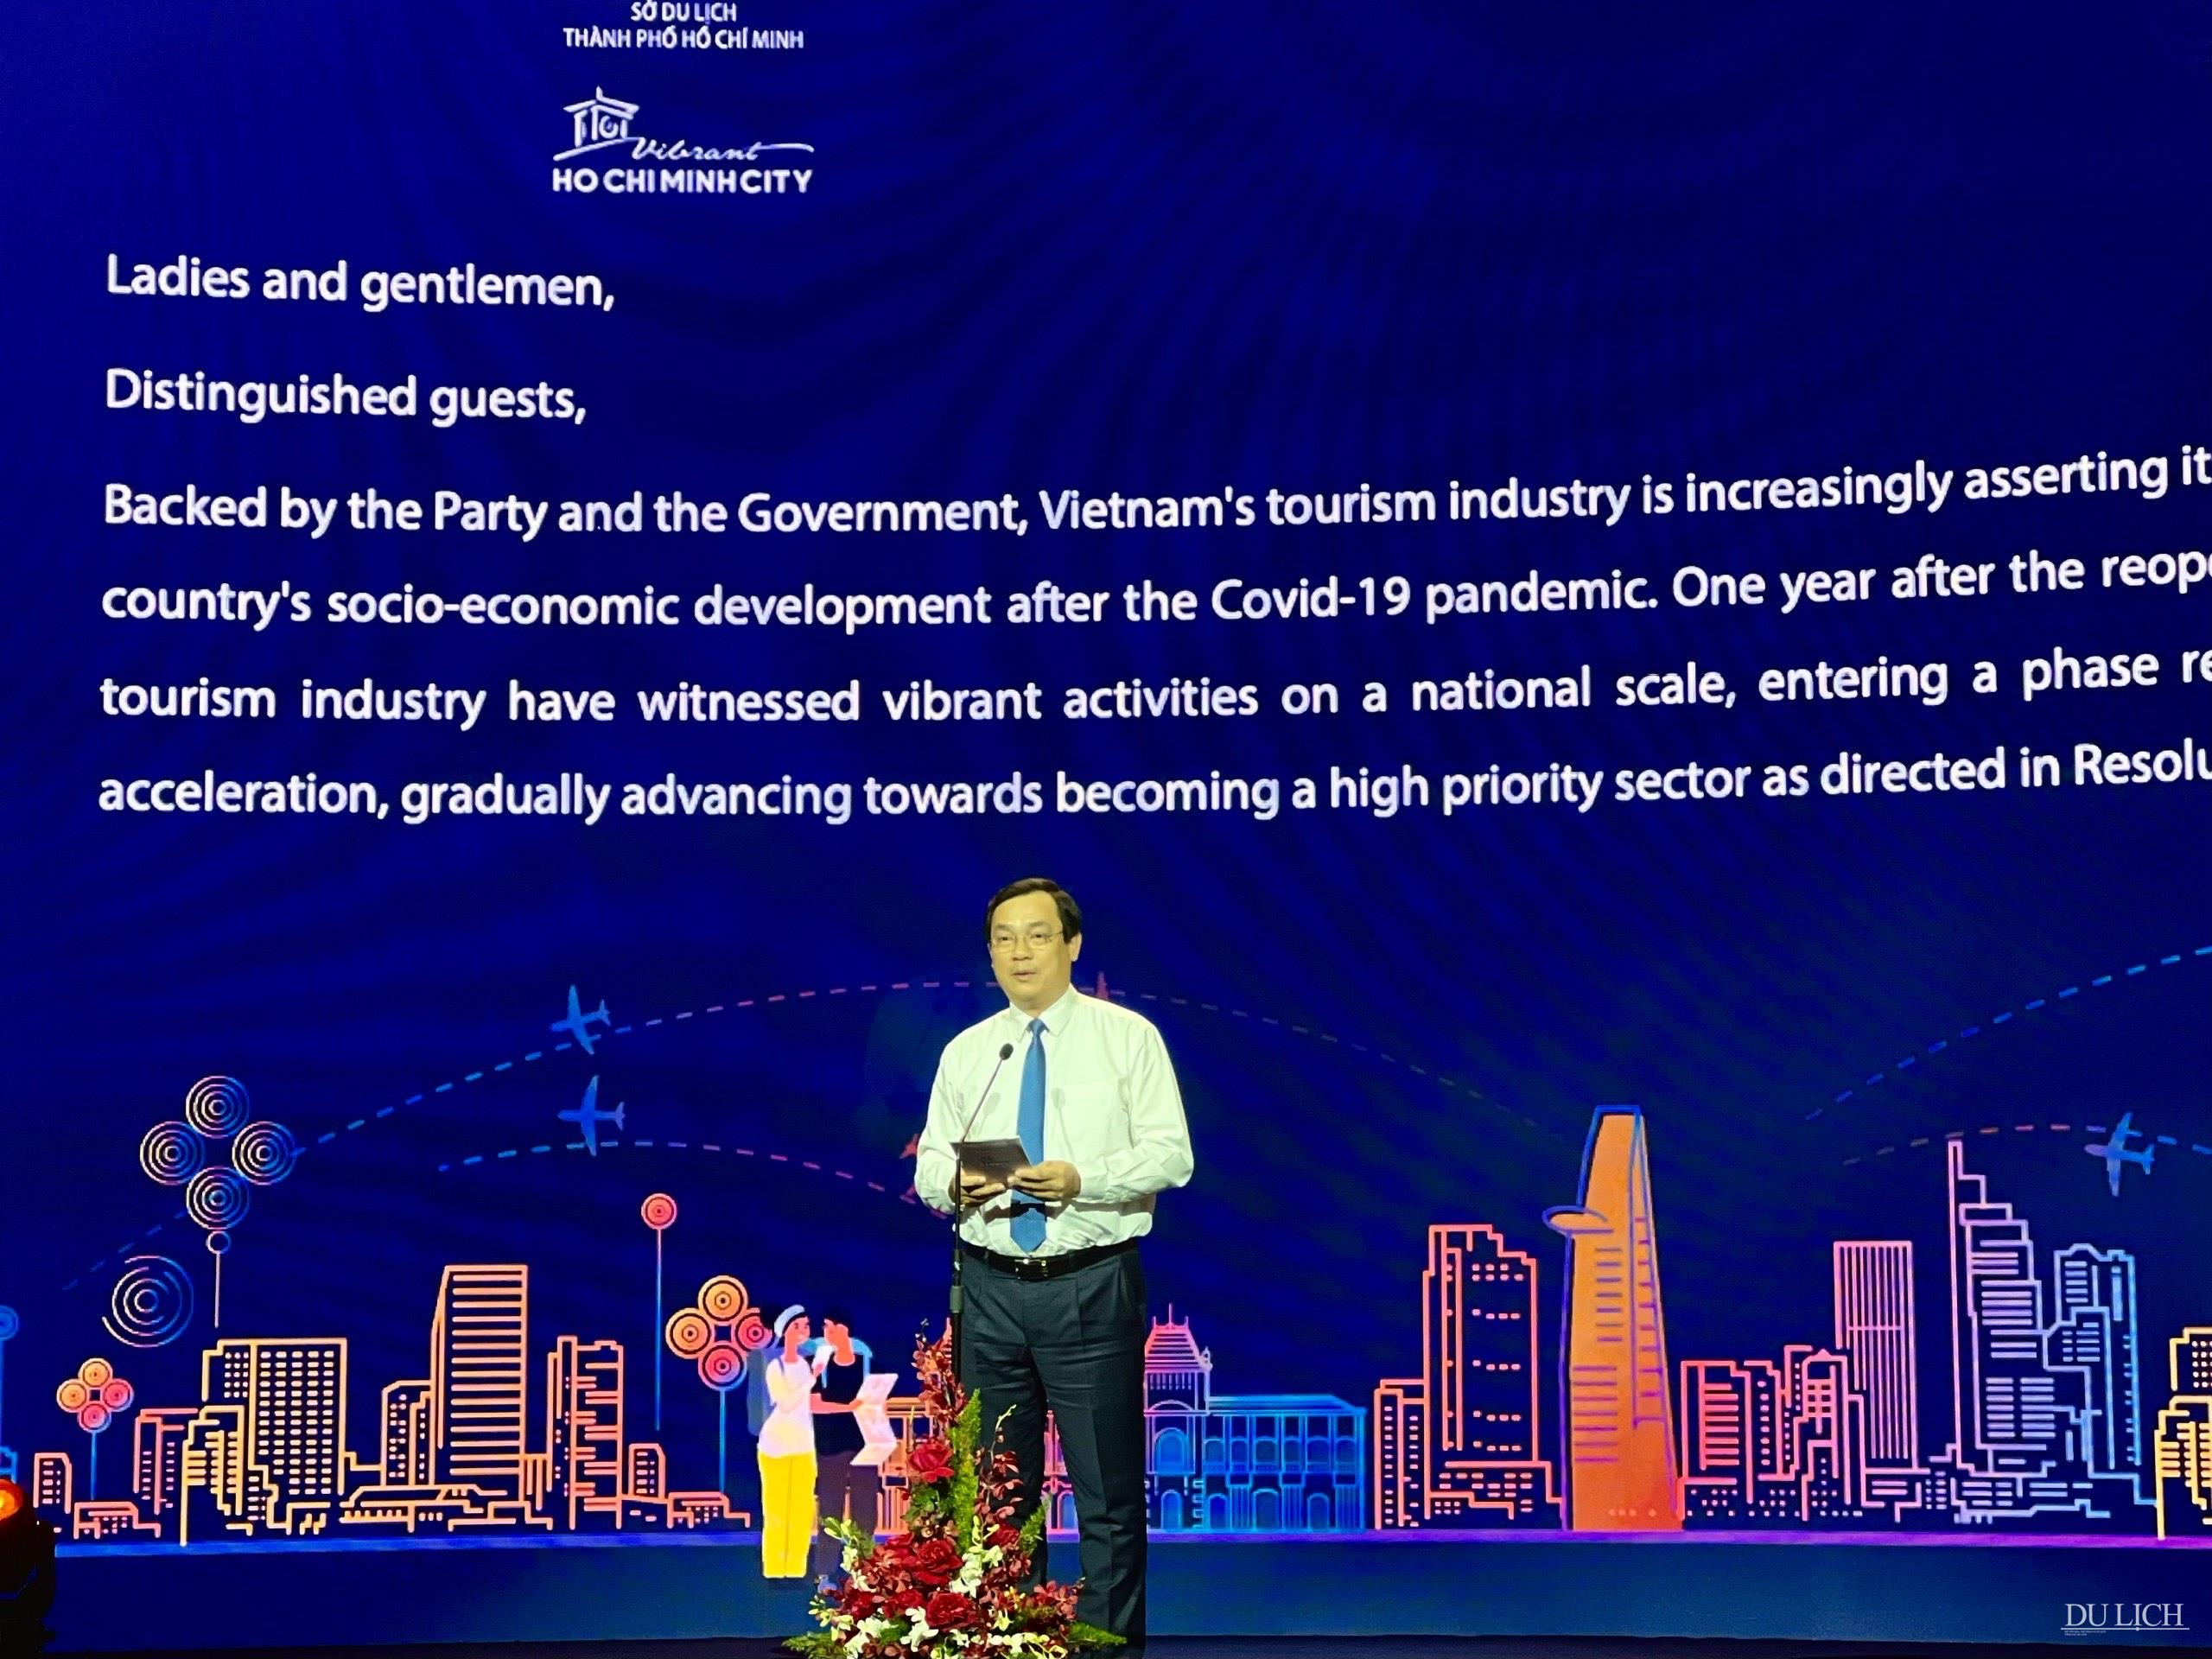 Tổng cục trưởng Tổng cục Du lịch Nguyễn Trùng Khánh phát biểu tại lễ khai mạc Ngày hội Du lịch TP. Hồ Chí Minh lần thứ 19